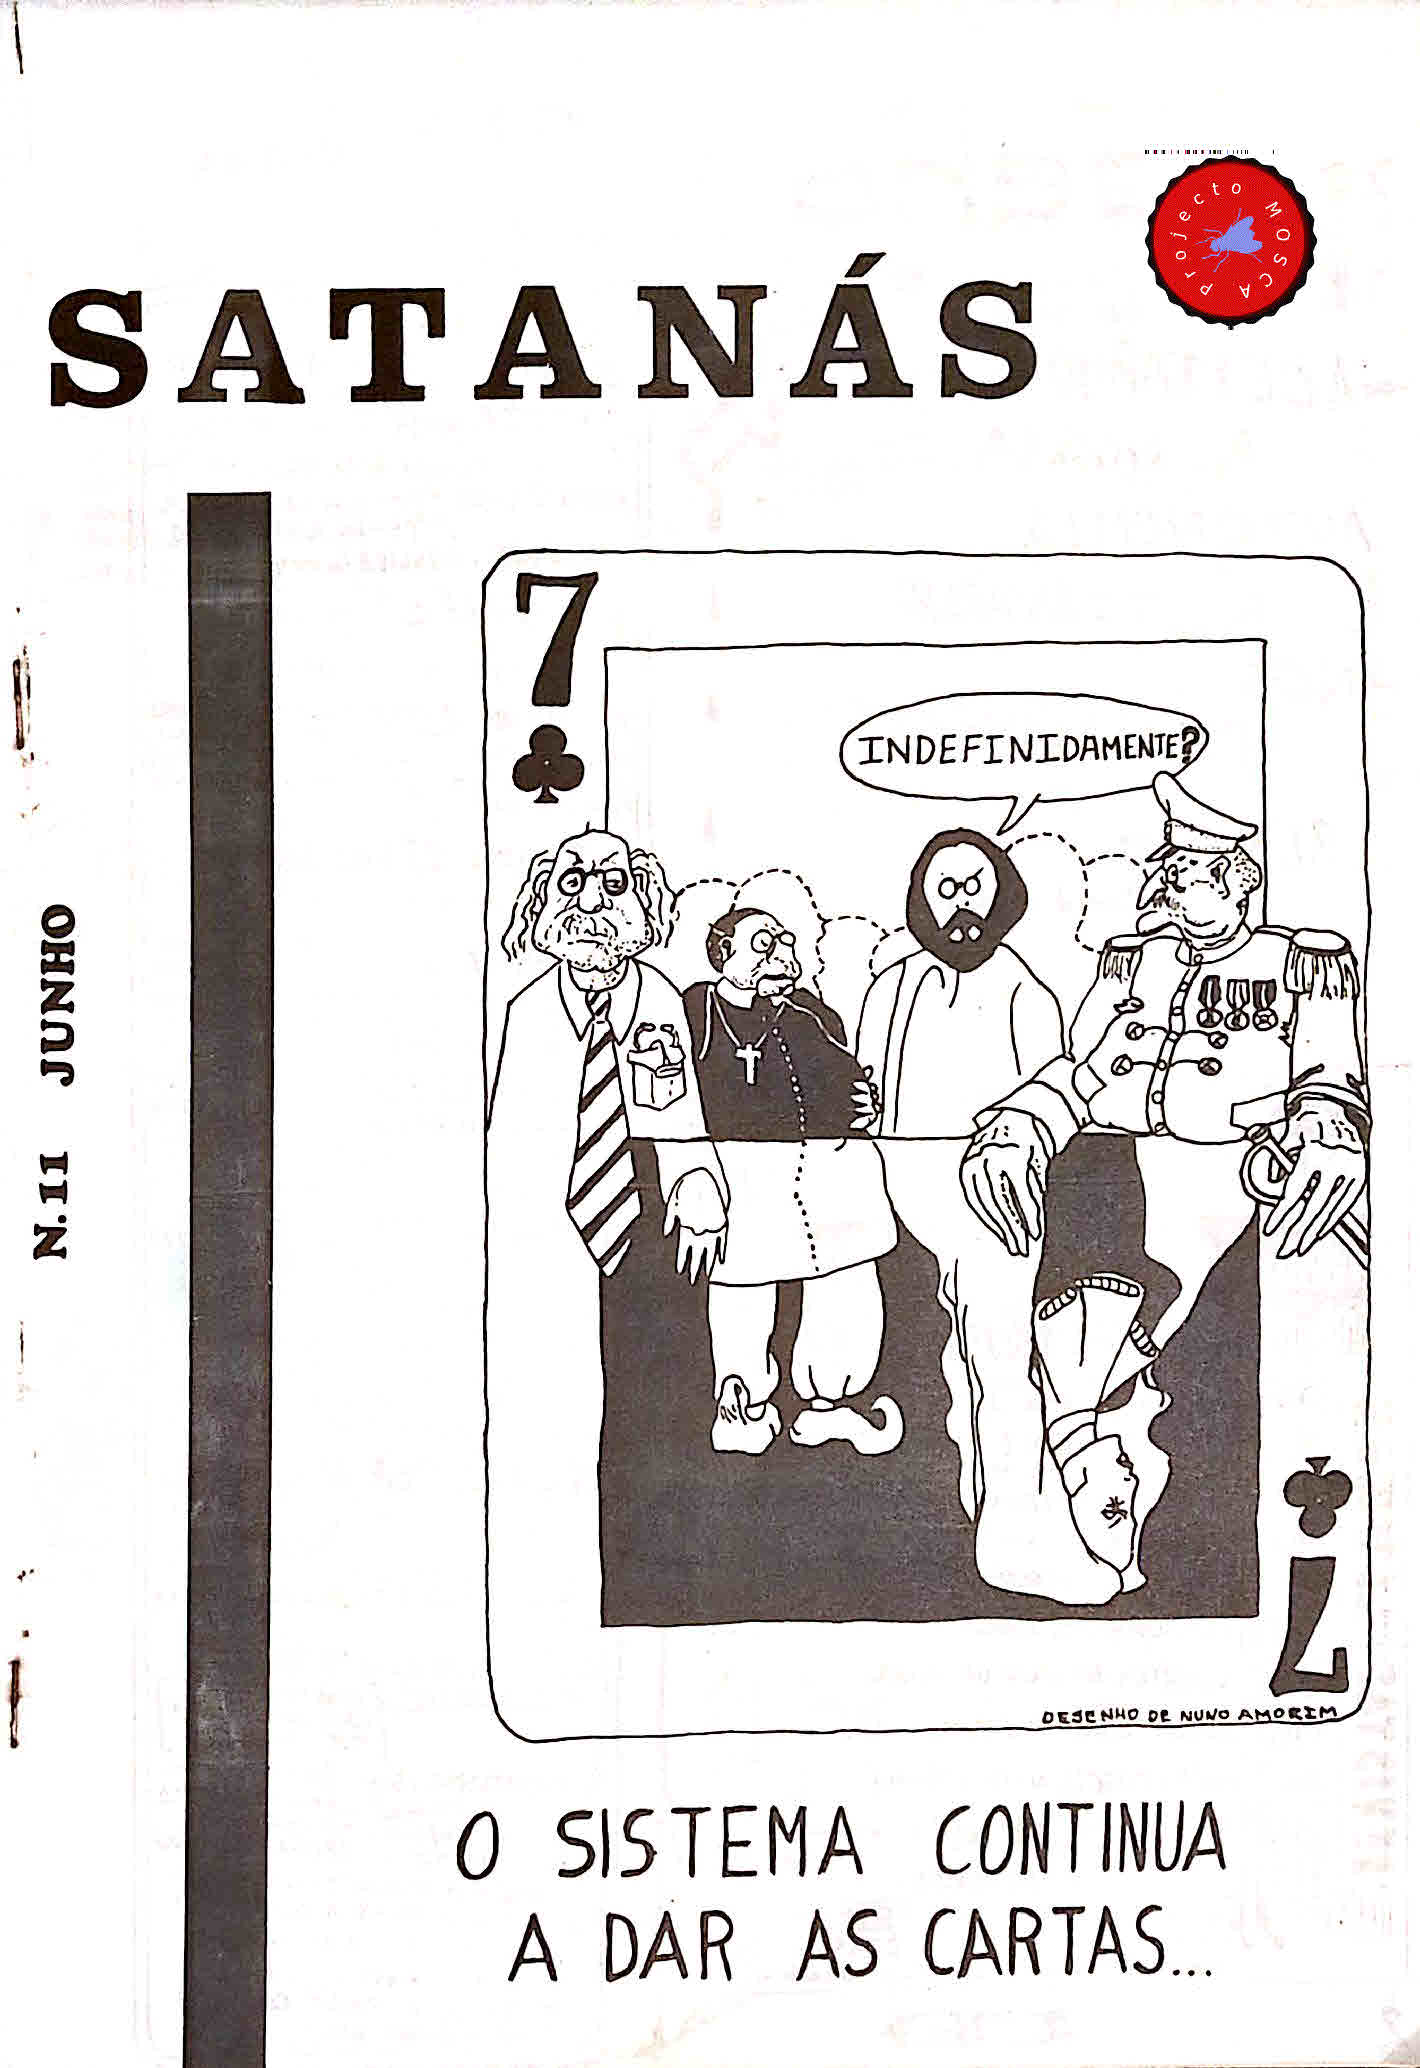 Satanás: capa do nº 11